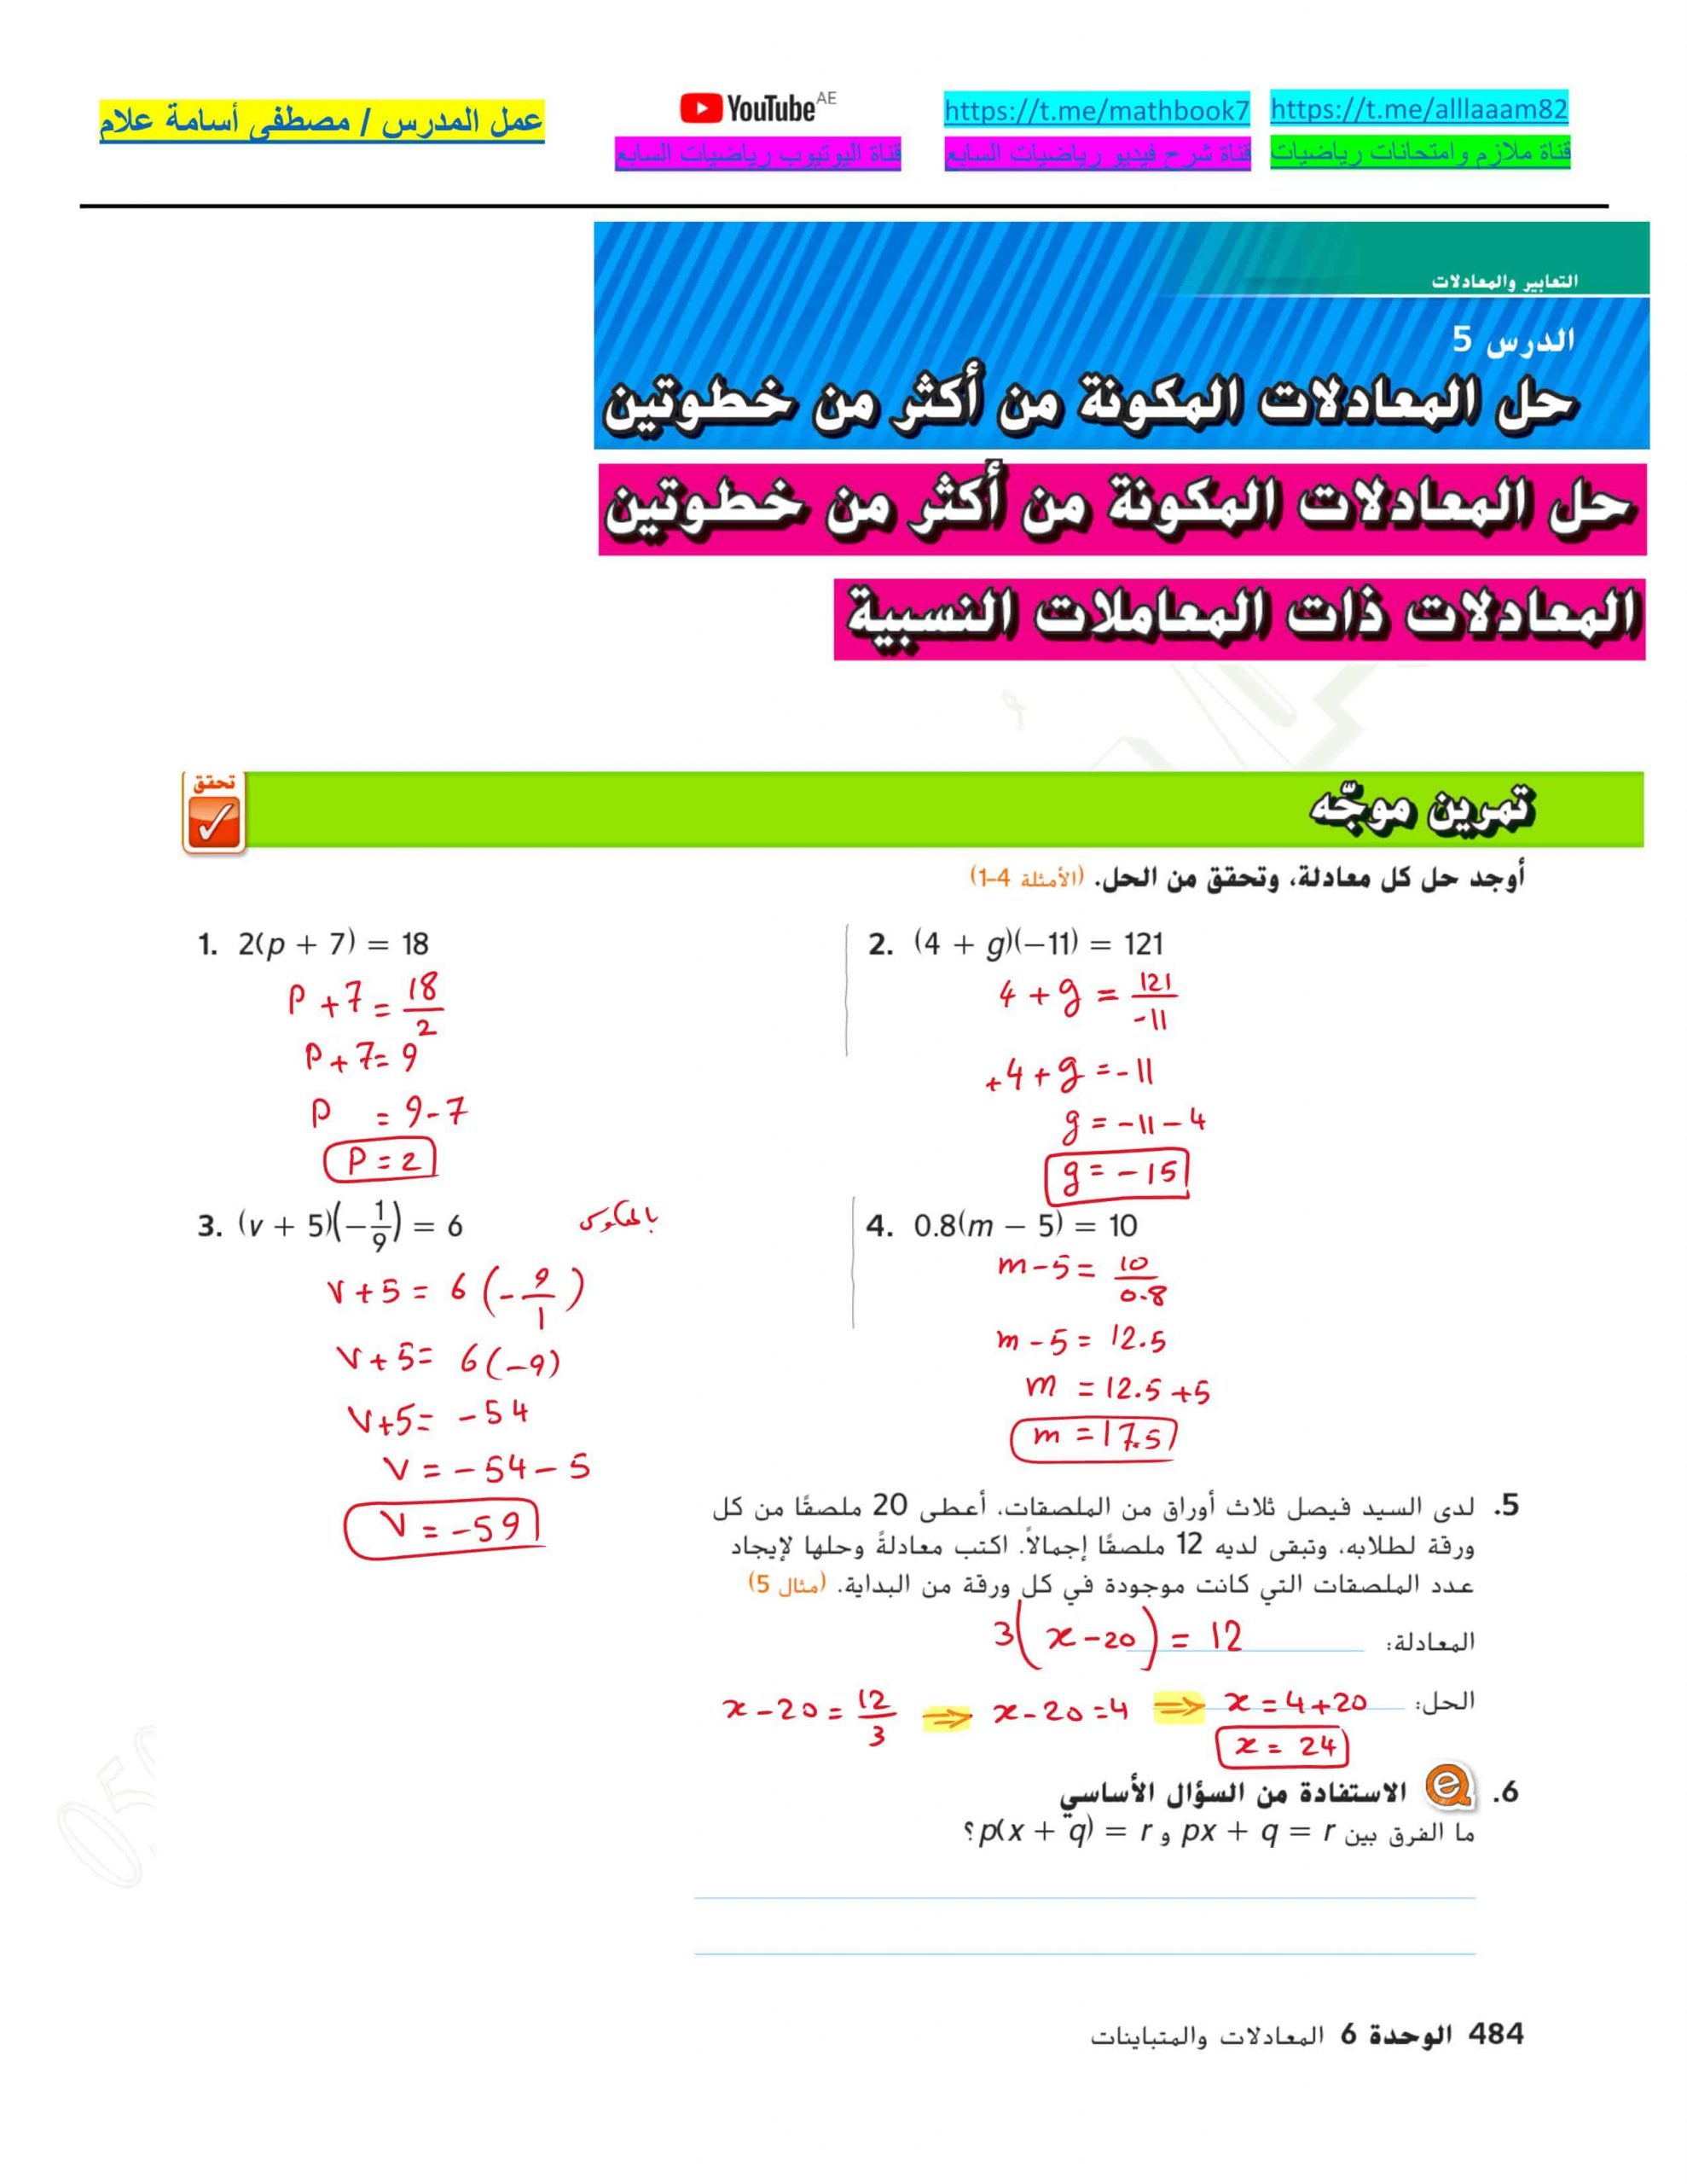 حل درس المعادلات المكونة من أكثر من خطوتين الصف السابع مادة الرياضيات المتكاملة